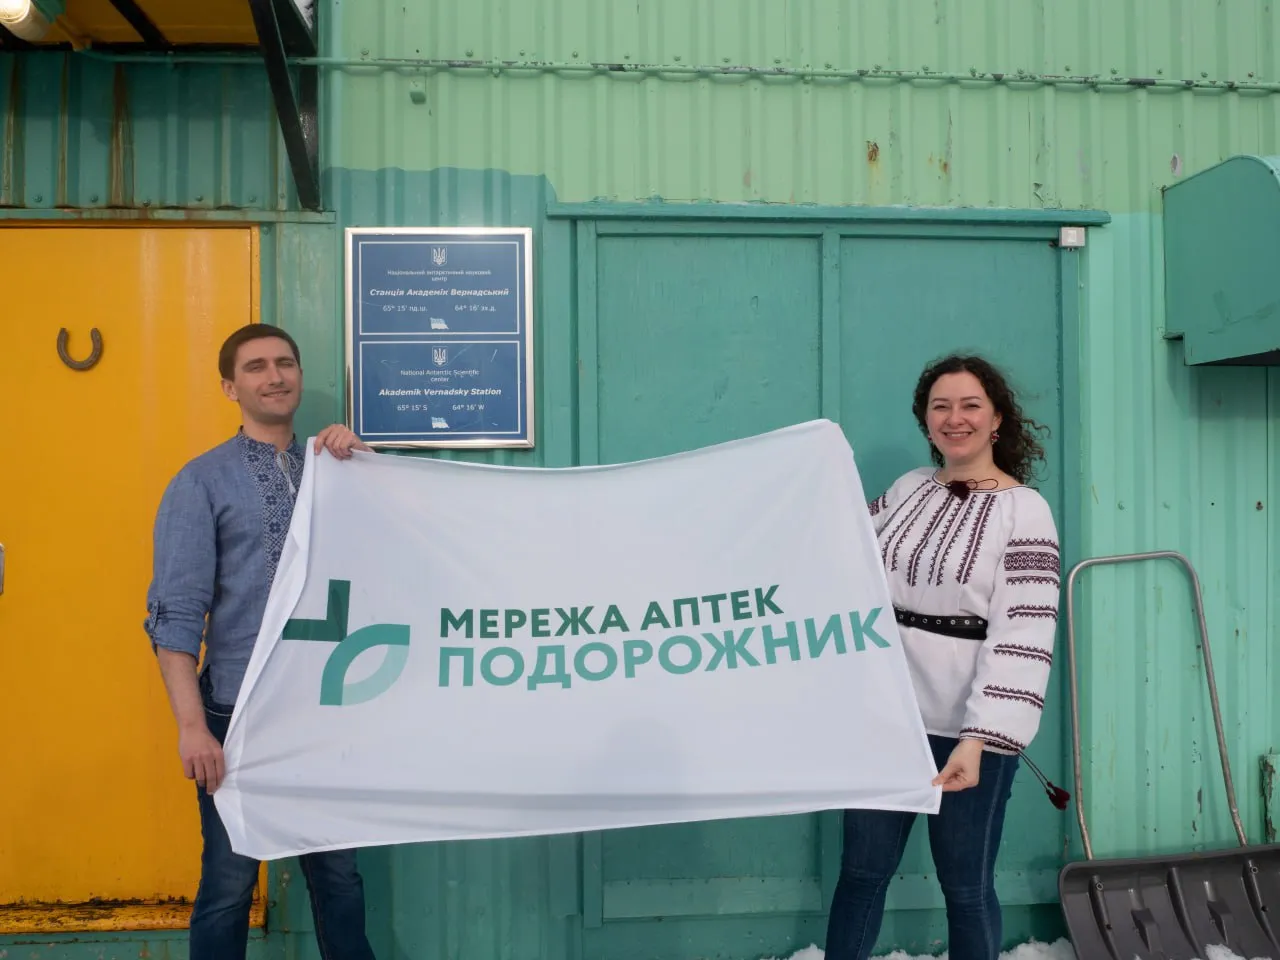 Медик 29-й полярной экспедиции Иванна Котурбаш и врач 28-й экспедиции Дмитрий Мартыненко 